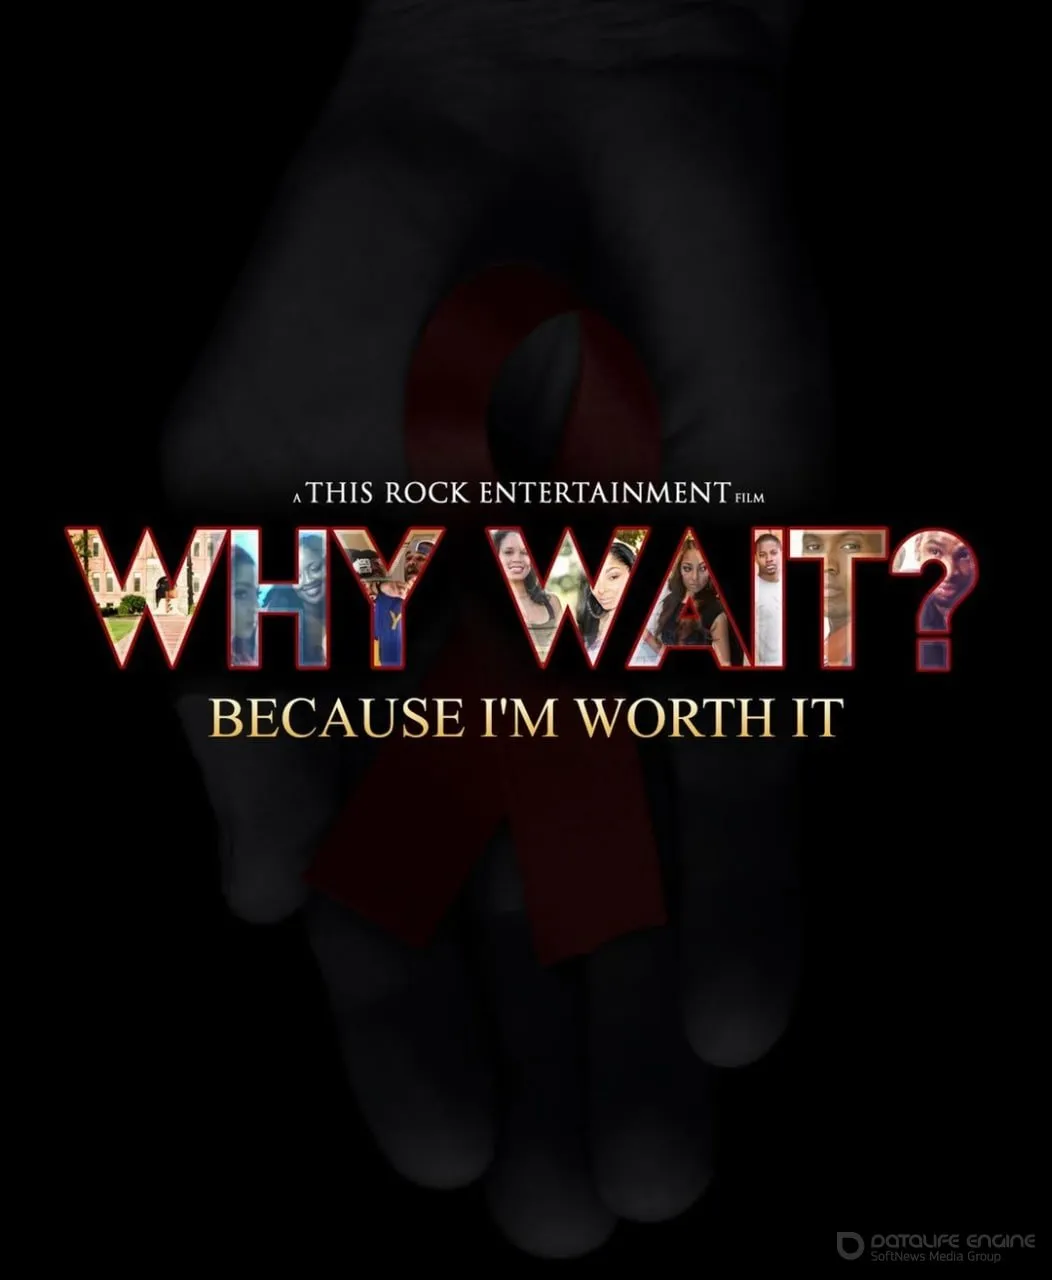 Постер к фильму "Зачем ждать?"